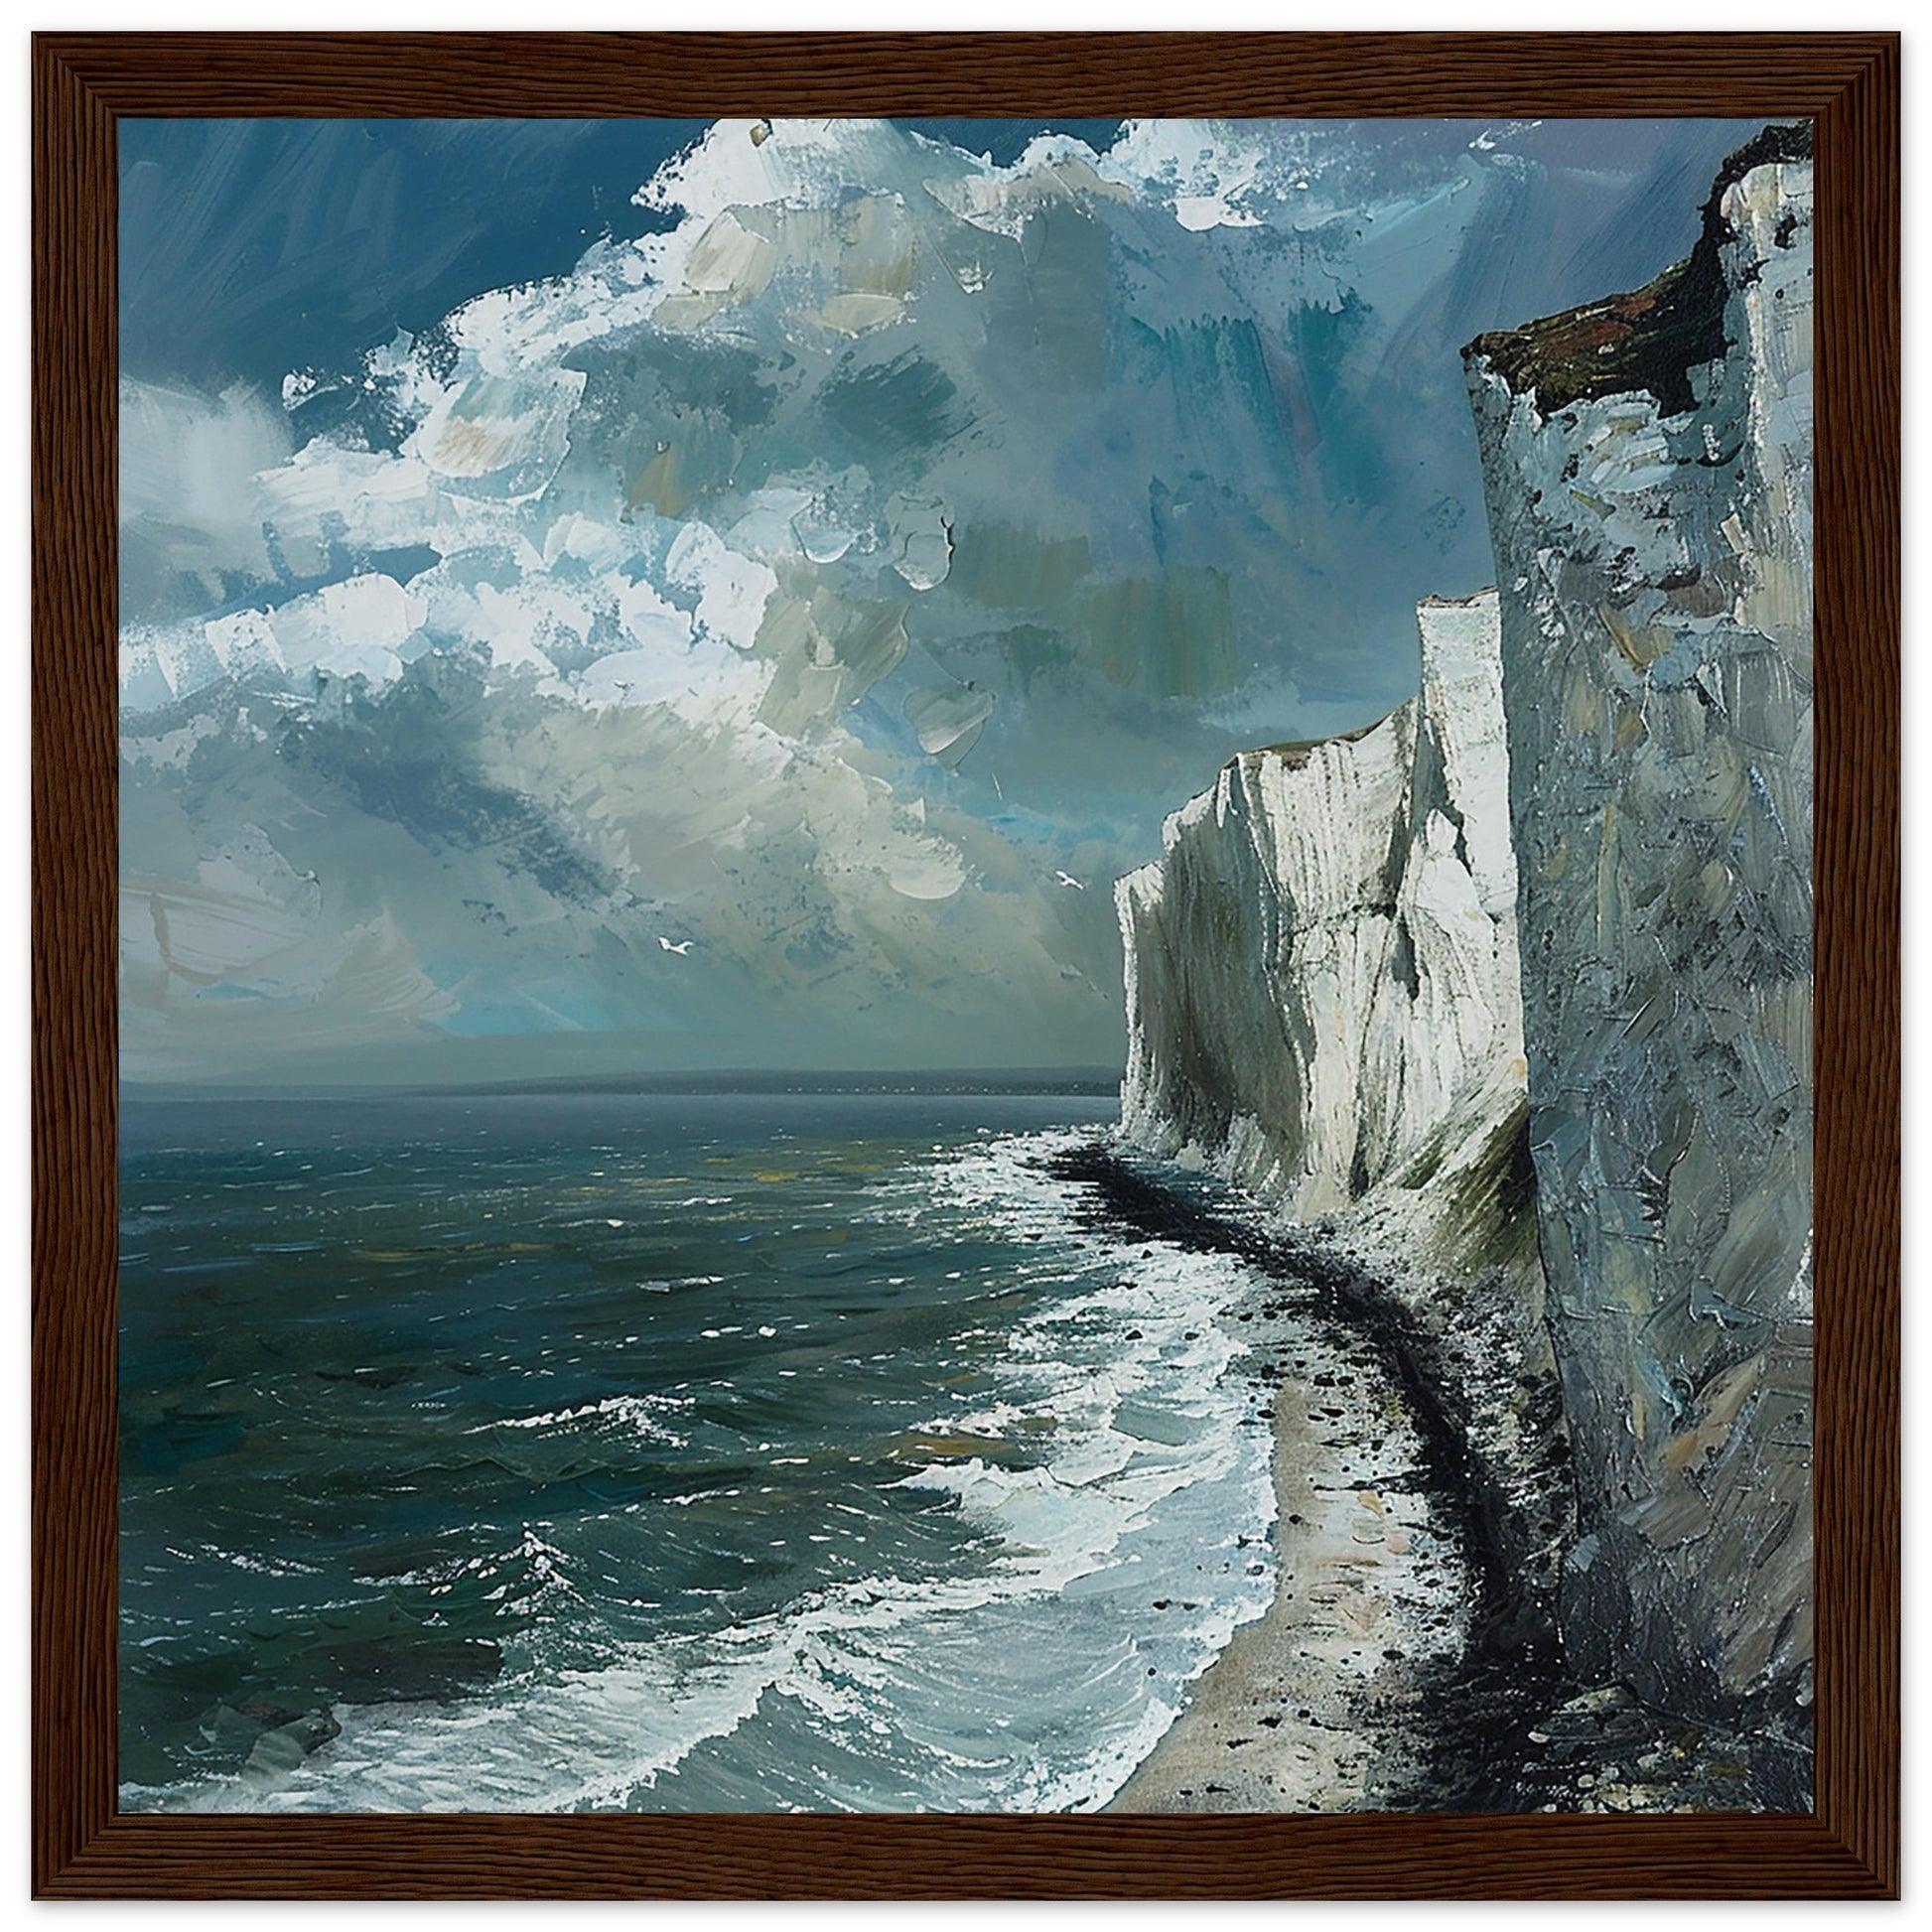 Artwork Print Majestic Cliffs: Serenity at Sea, Dover large framed Dark Wood Frame| By Print Room Ltd